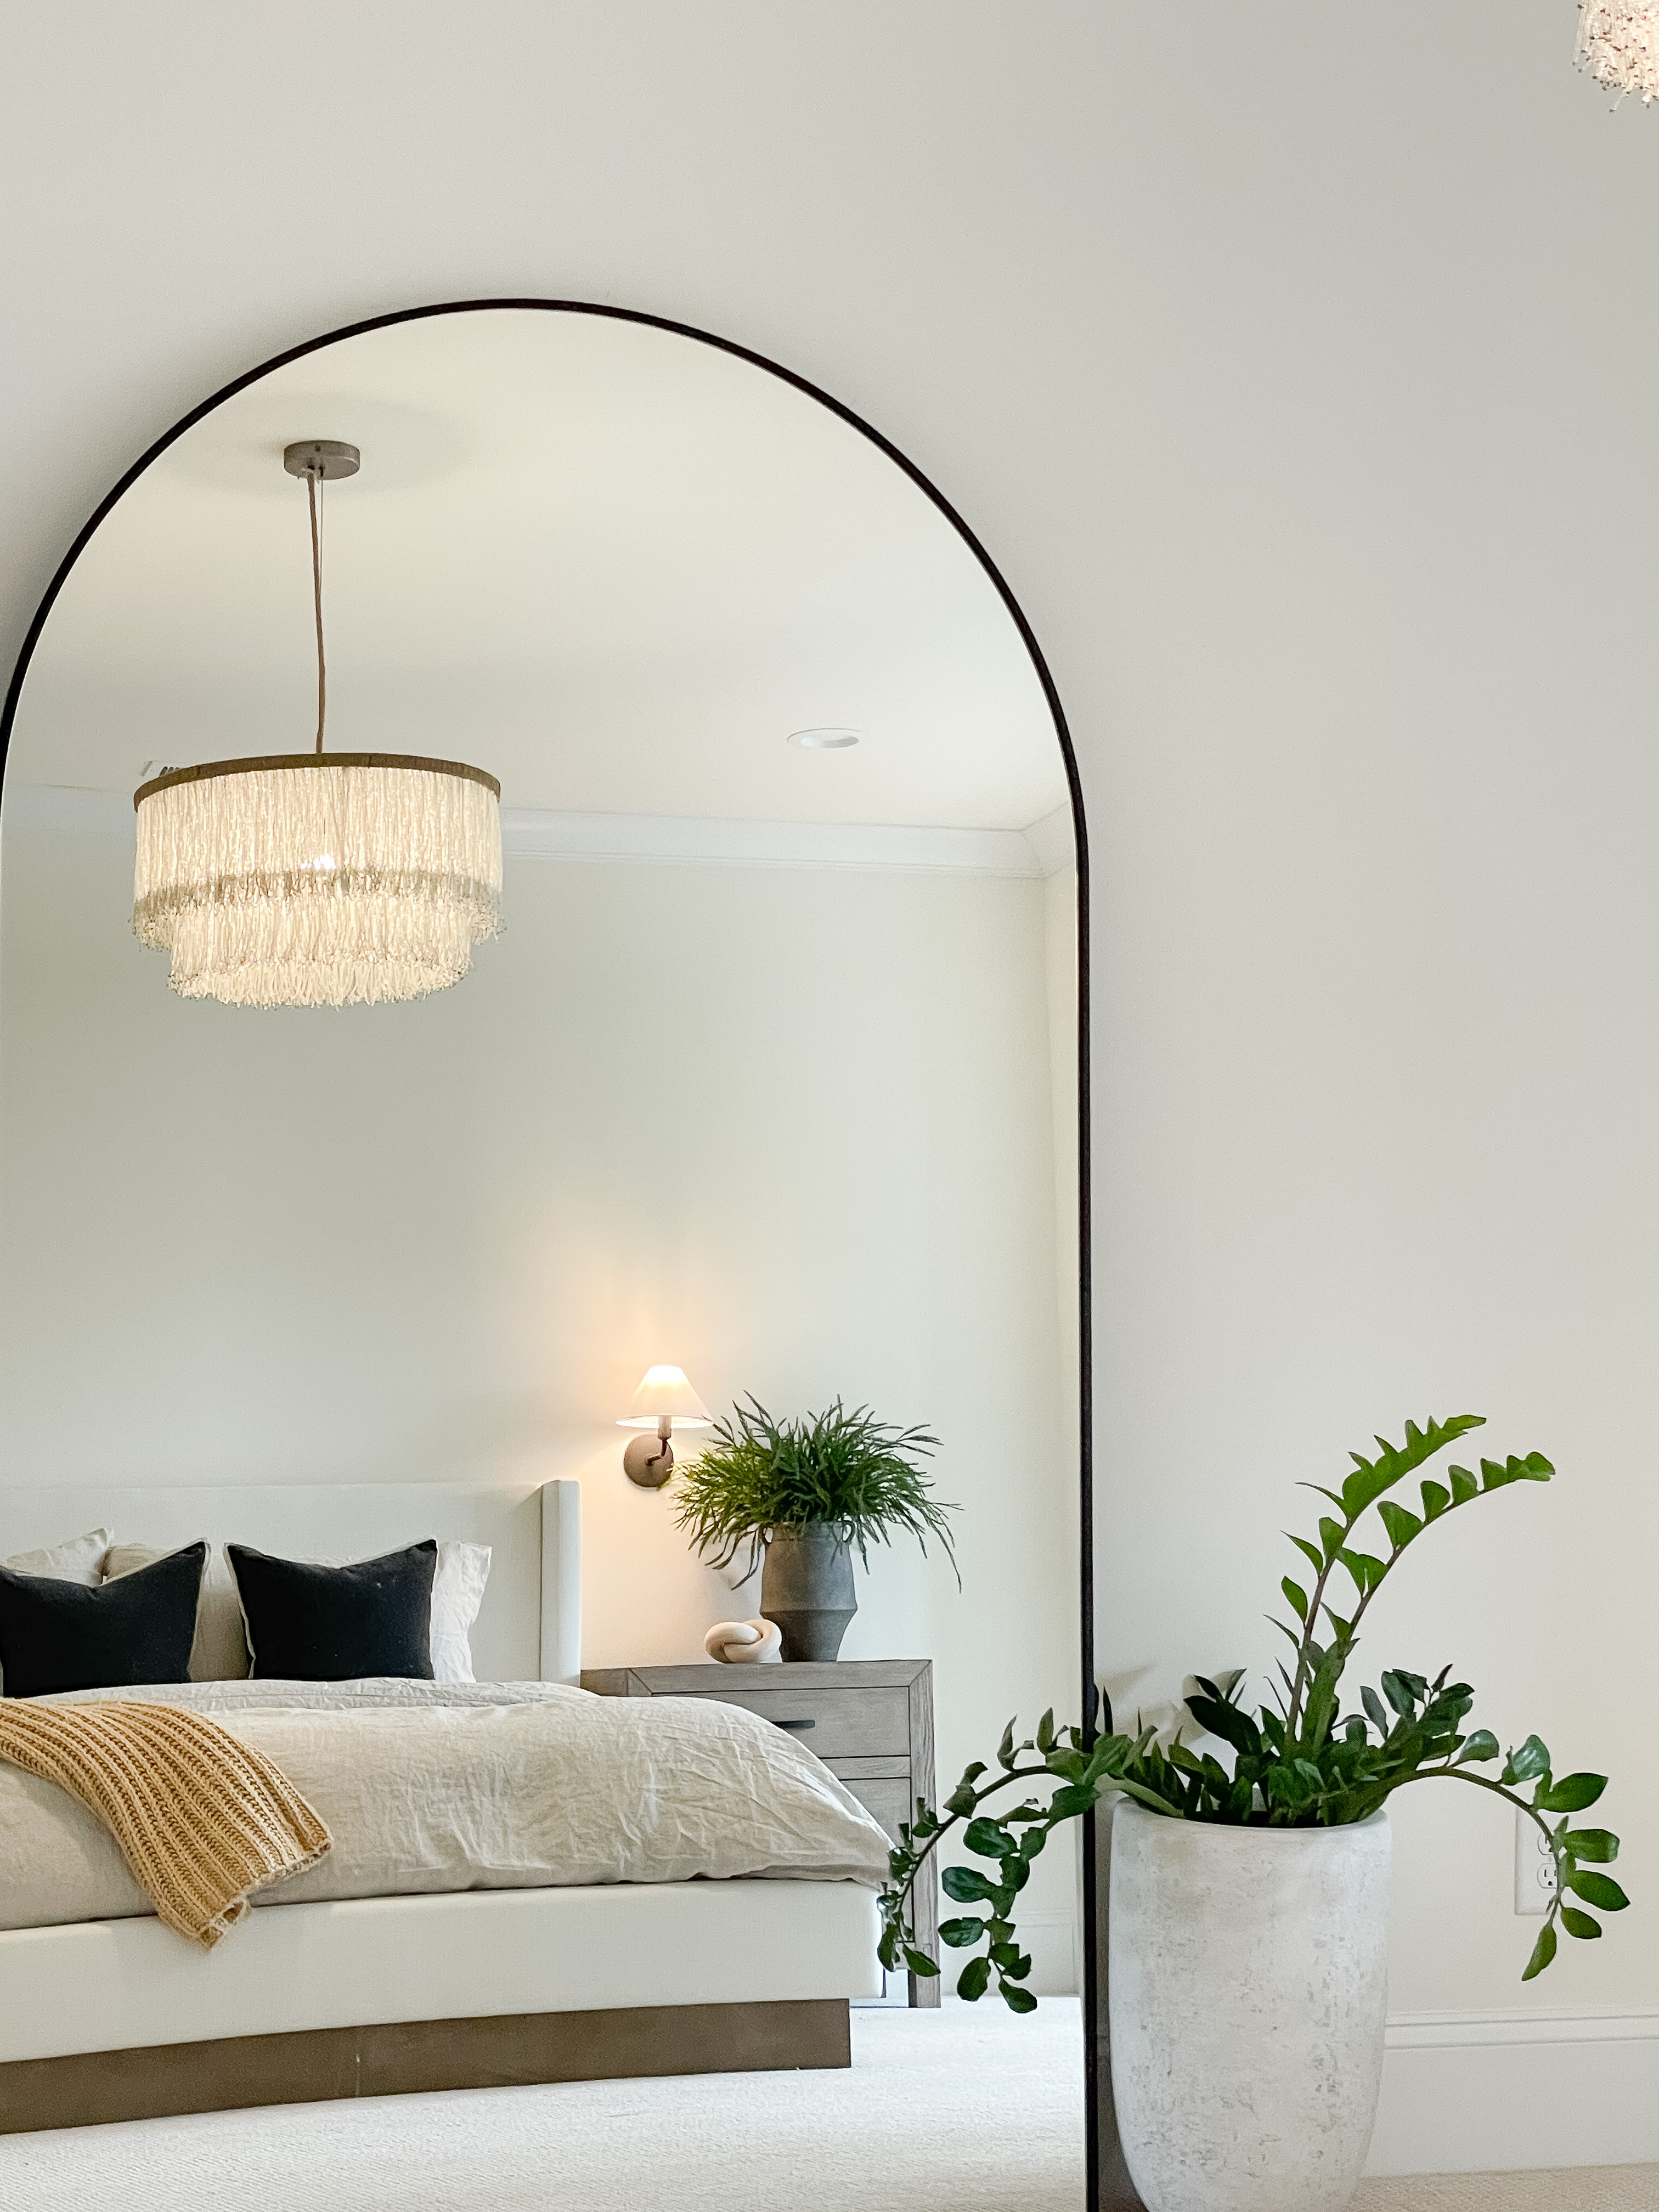 arched mirror bedroom decor idea 